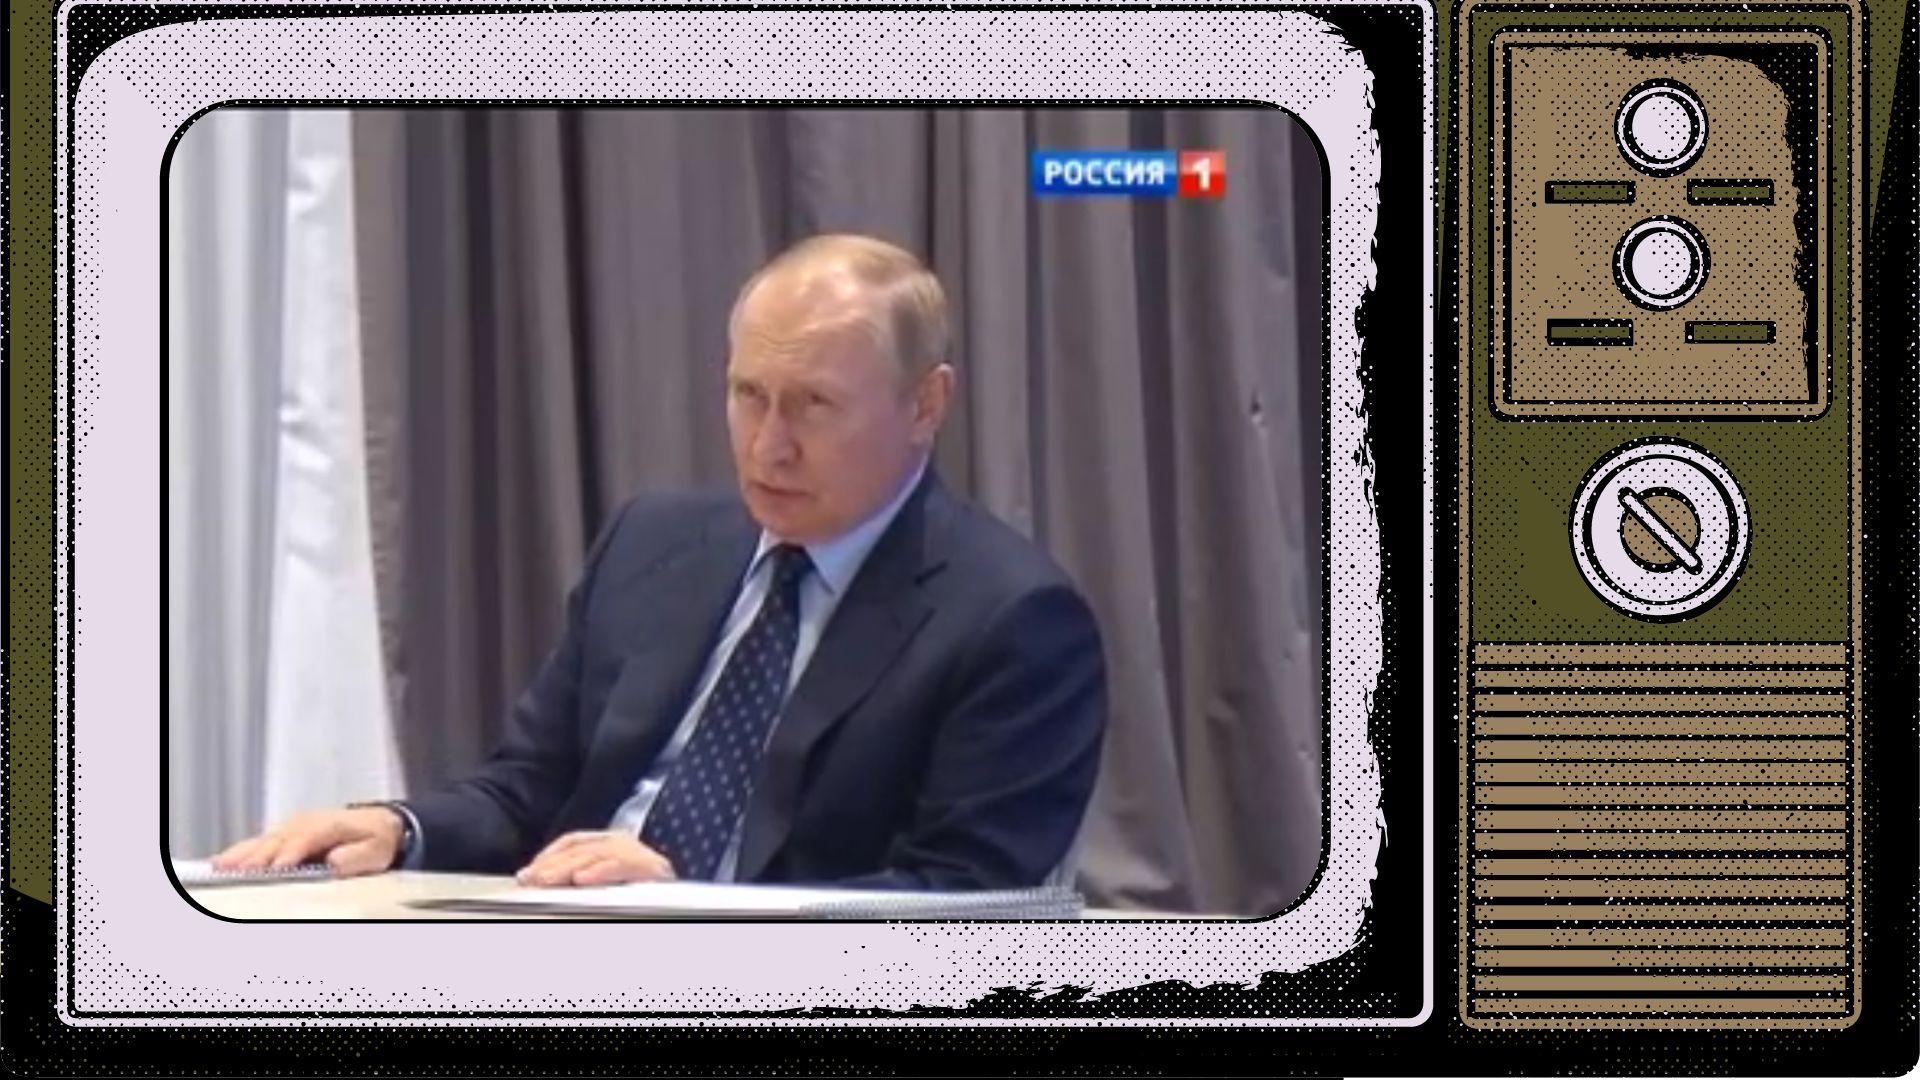 Grafika: Putin w starym telewizorze